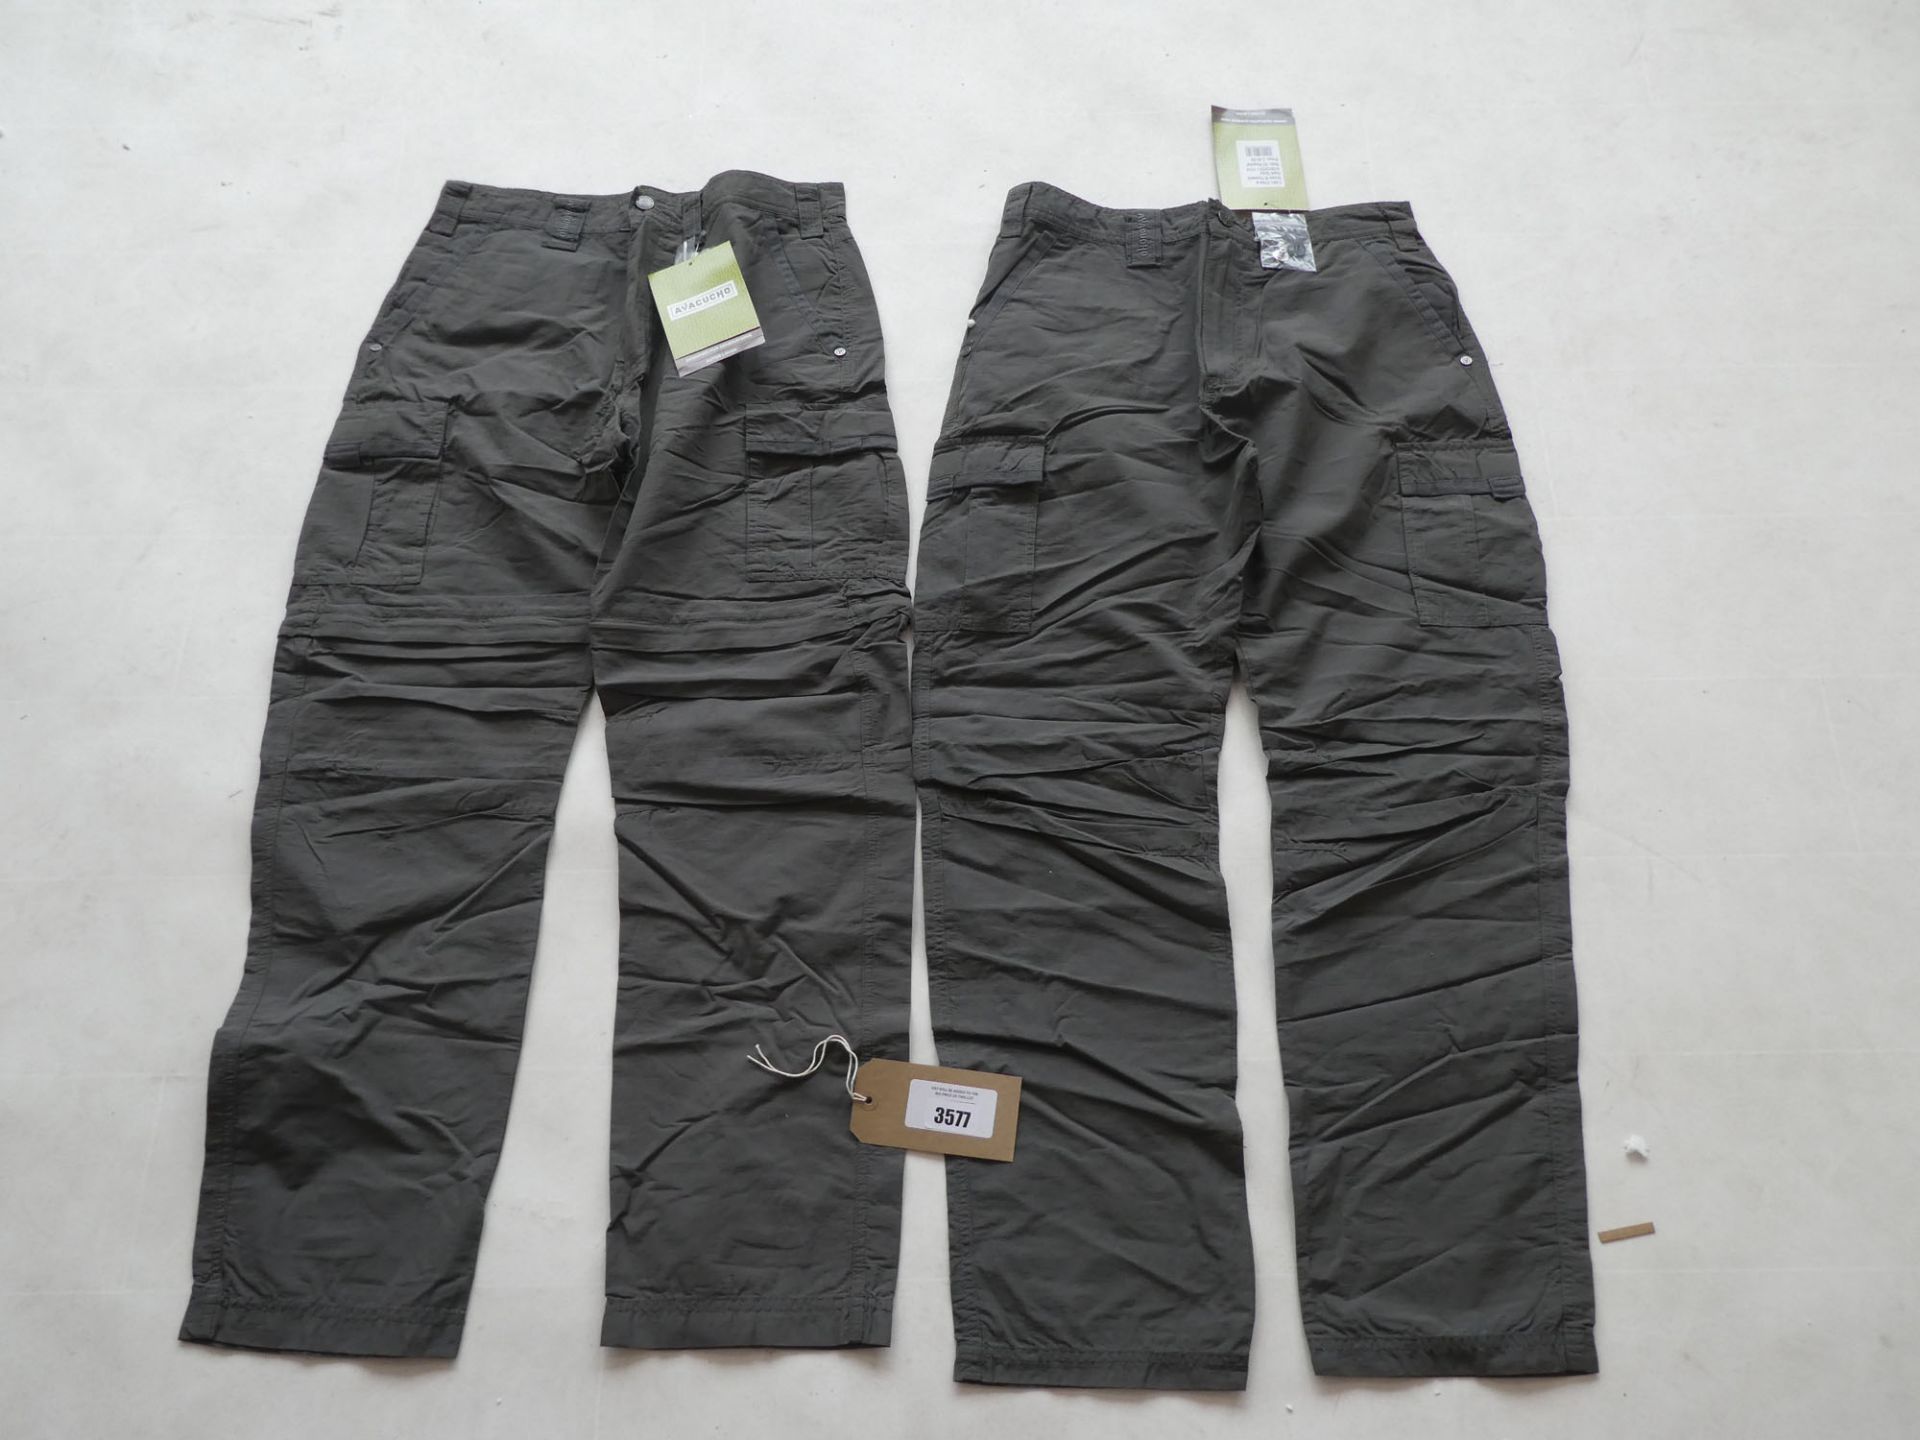 2 Ayacucho gruno trousers in dark grey sizes 30 & 32R